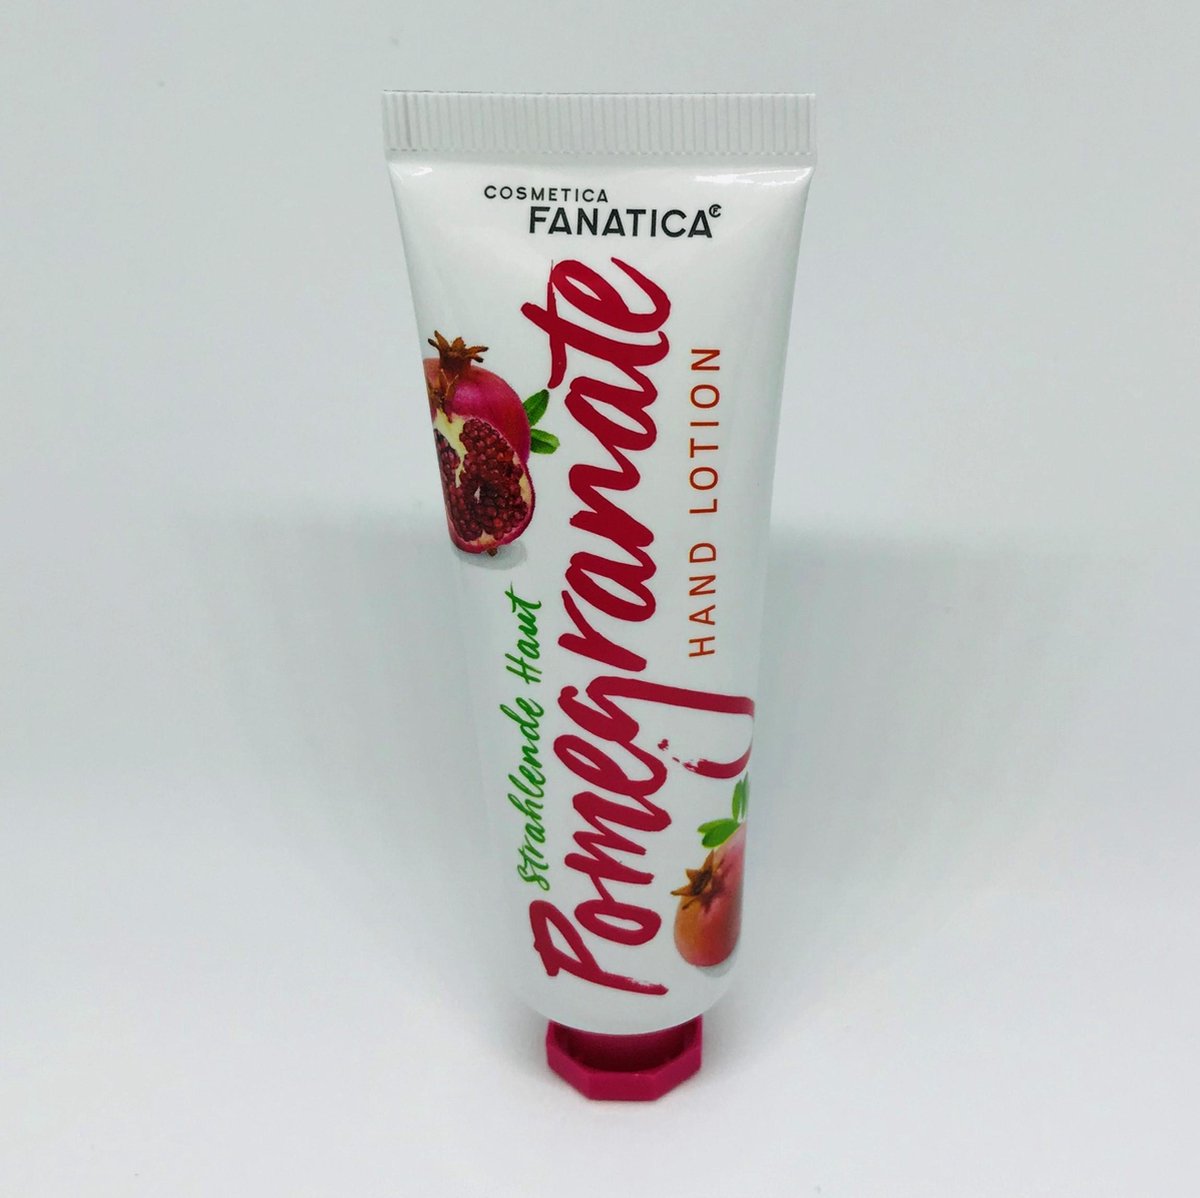 Cosmetica Fanatica - handlotion/handcrème - granaatappel geur / pomegranate - voor een stralende huid / strahlende haut - 1 kleine tube met 30 ml. inhoud